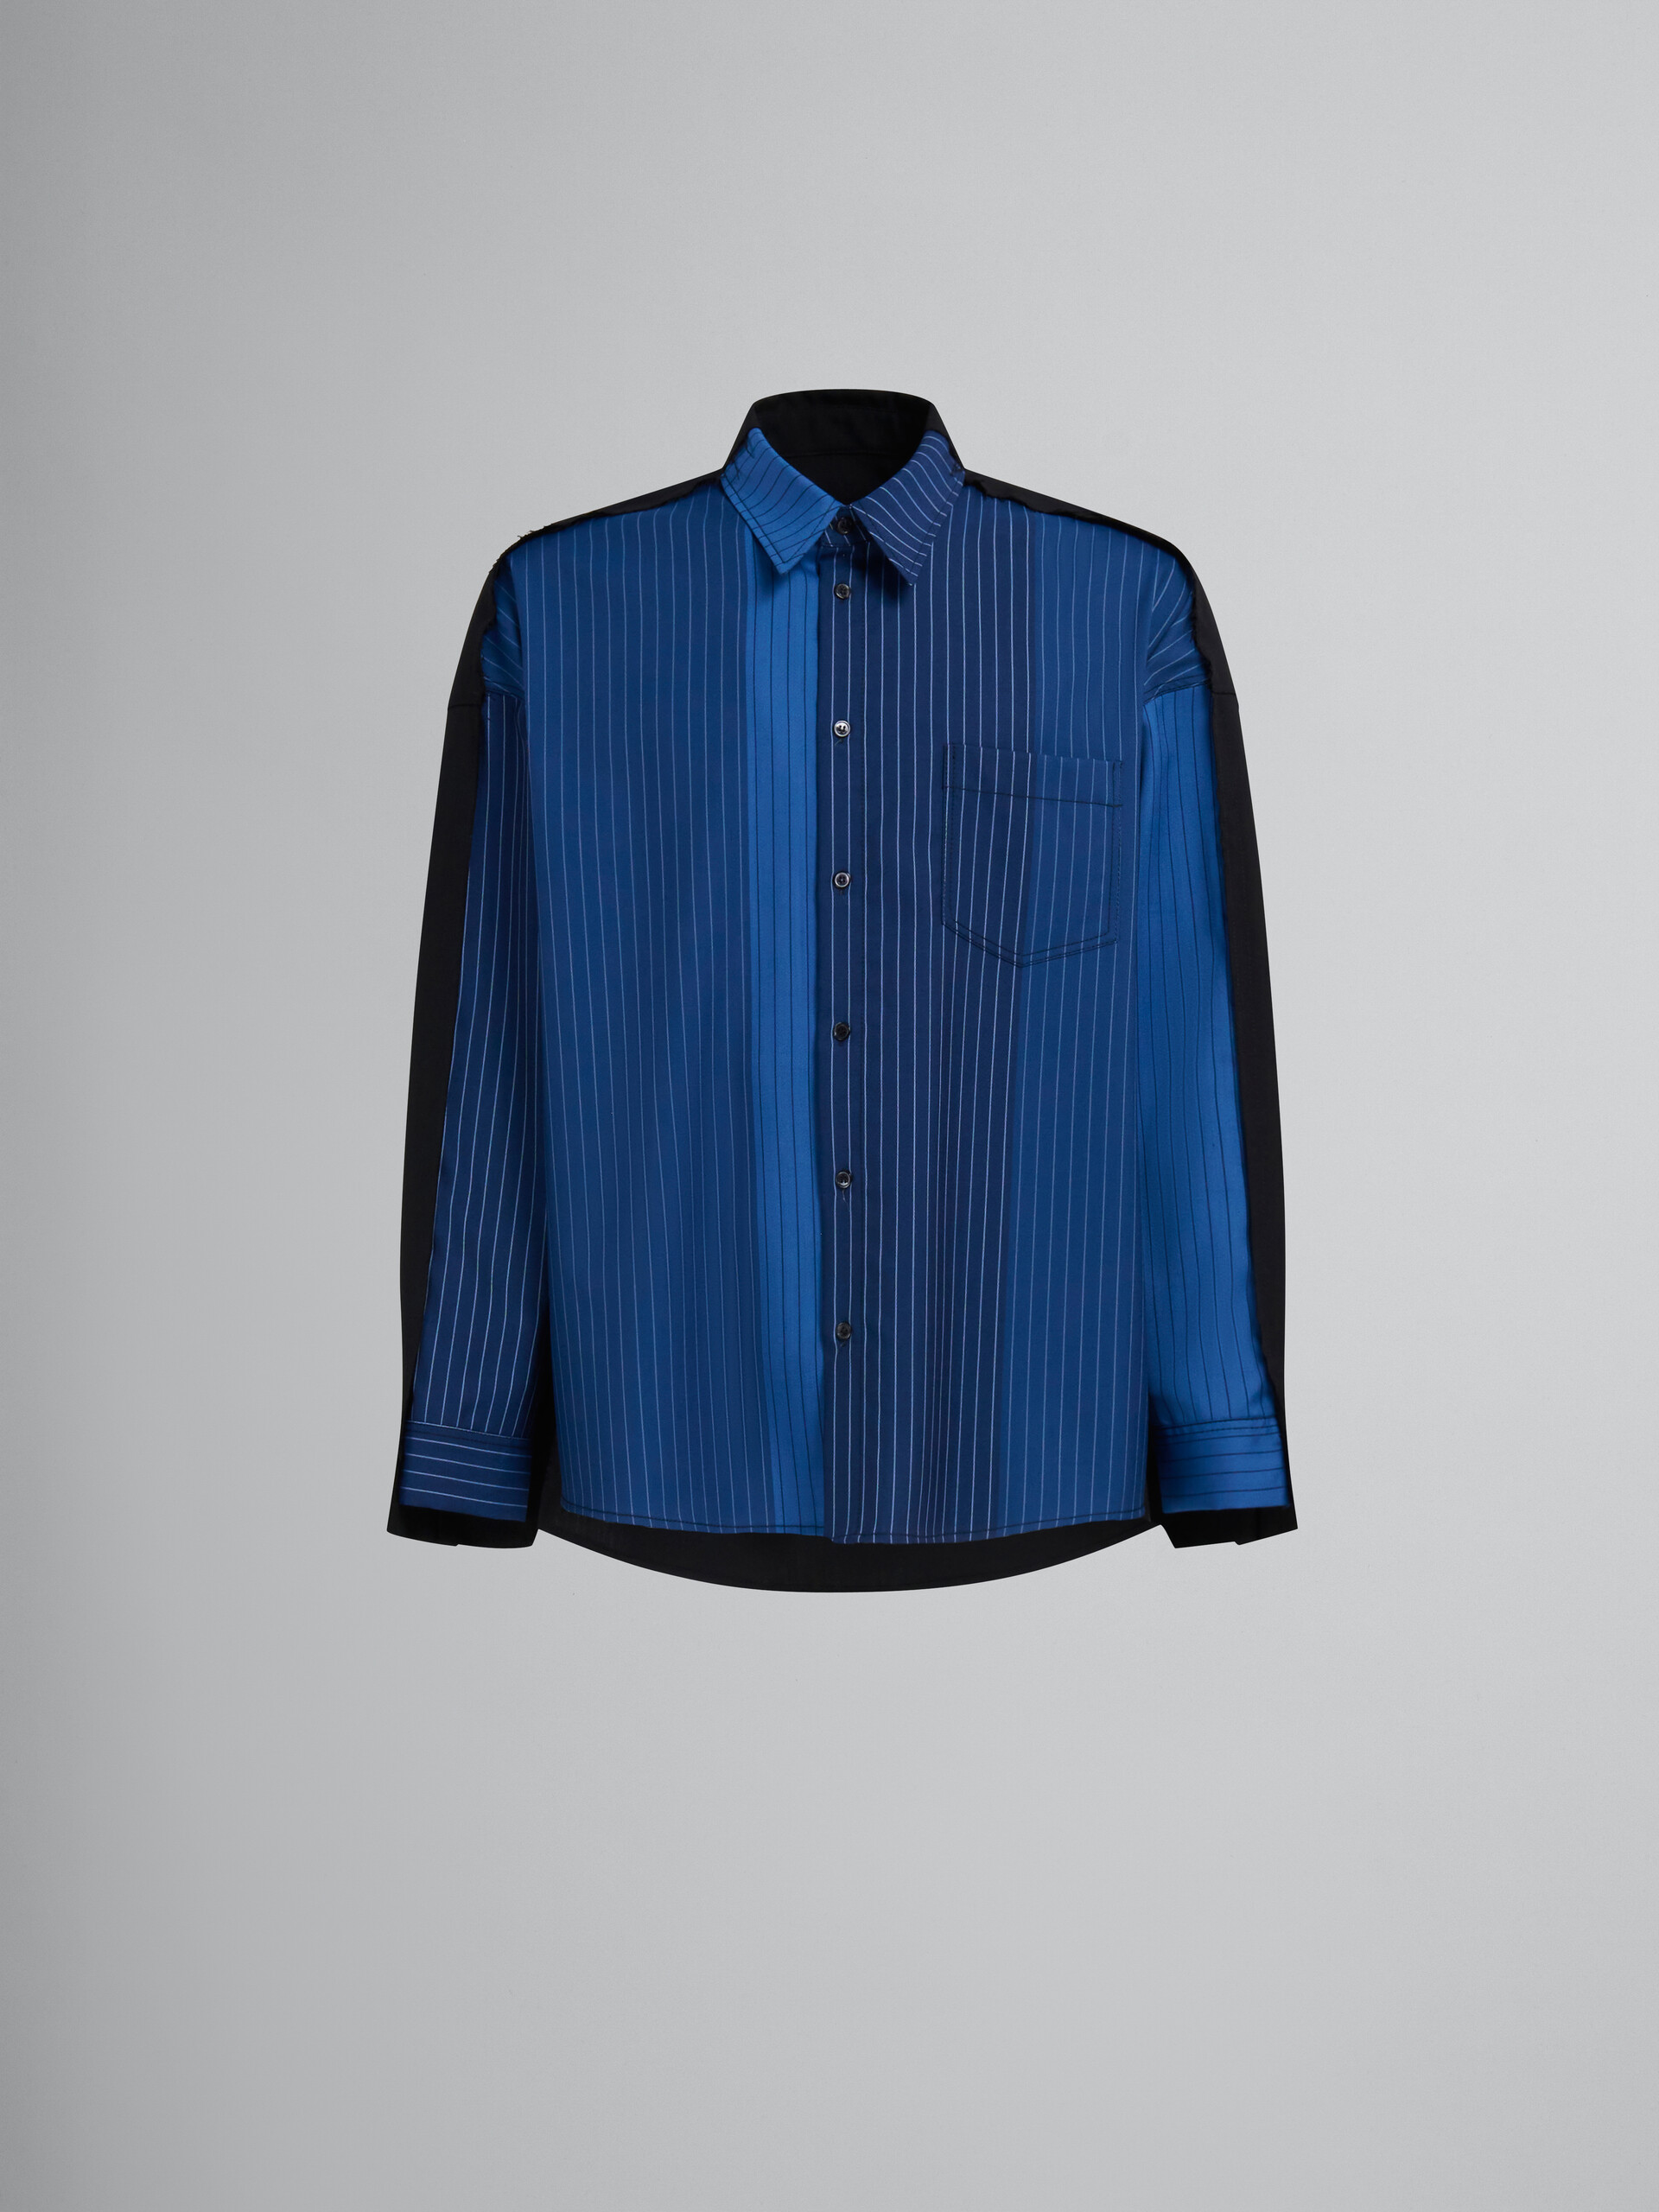 Blaues Hemd aus Wolle mit Nadelstreifen in Dégradé-Optik und kontrastierender Rückseite - Hemden - Image 1